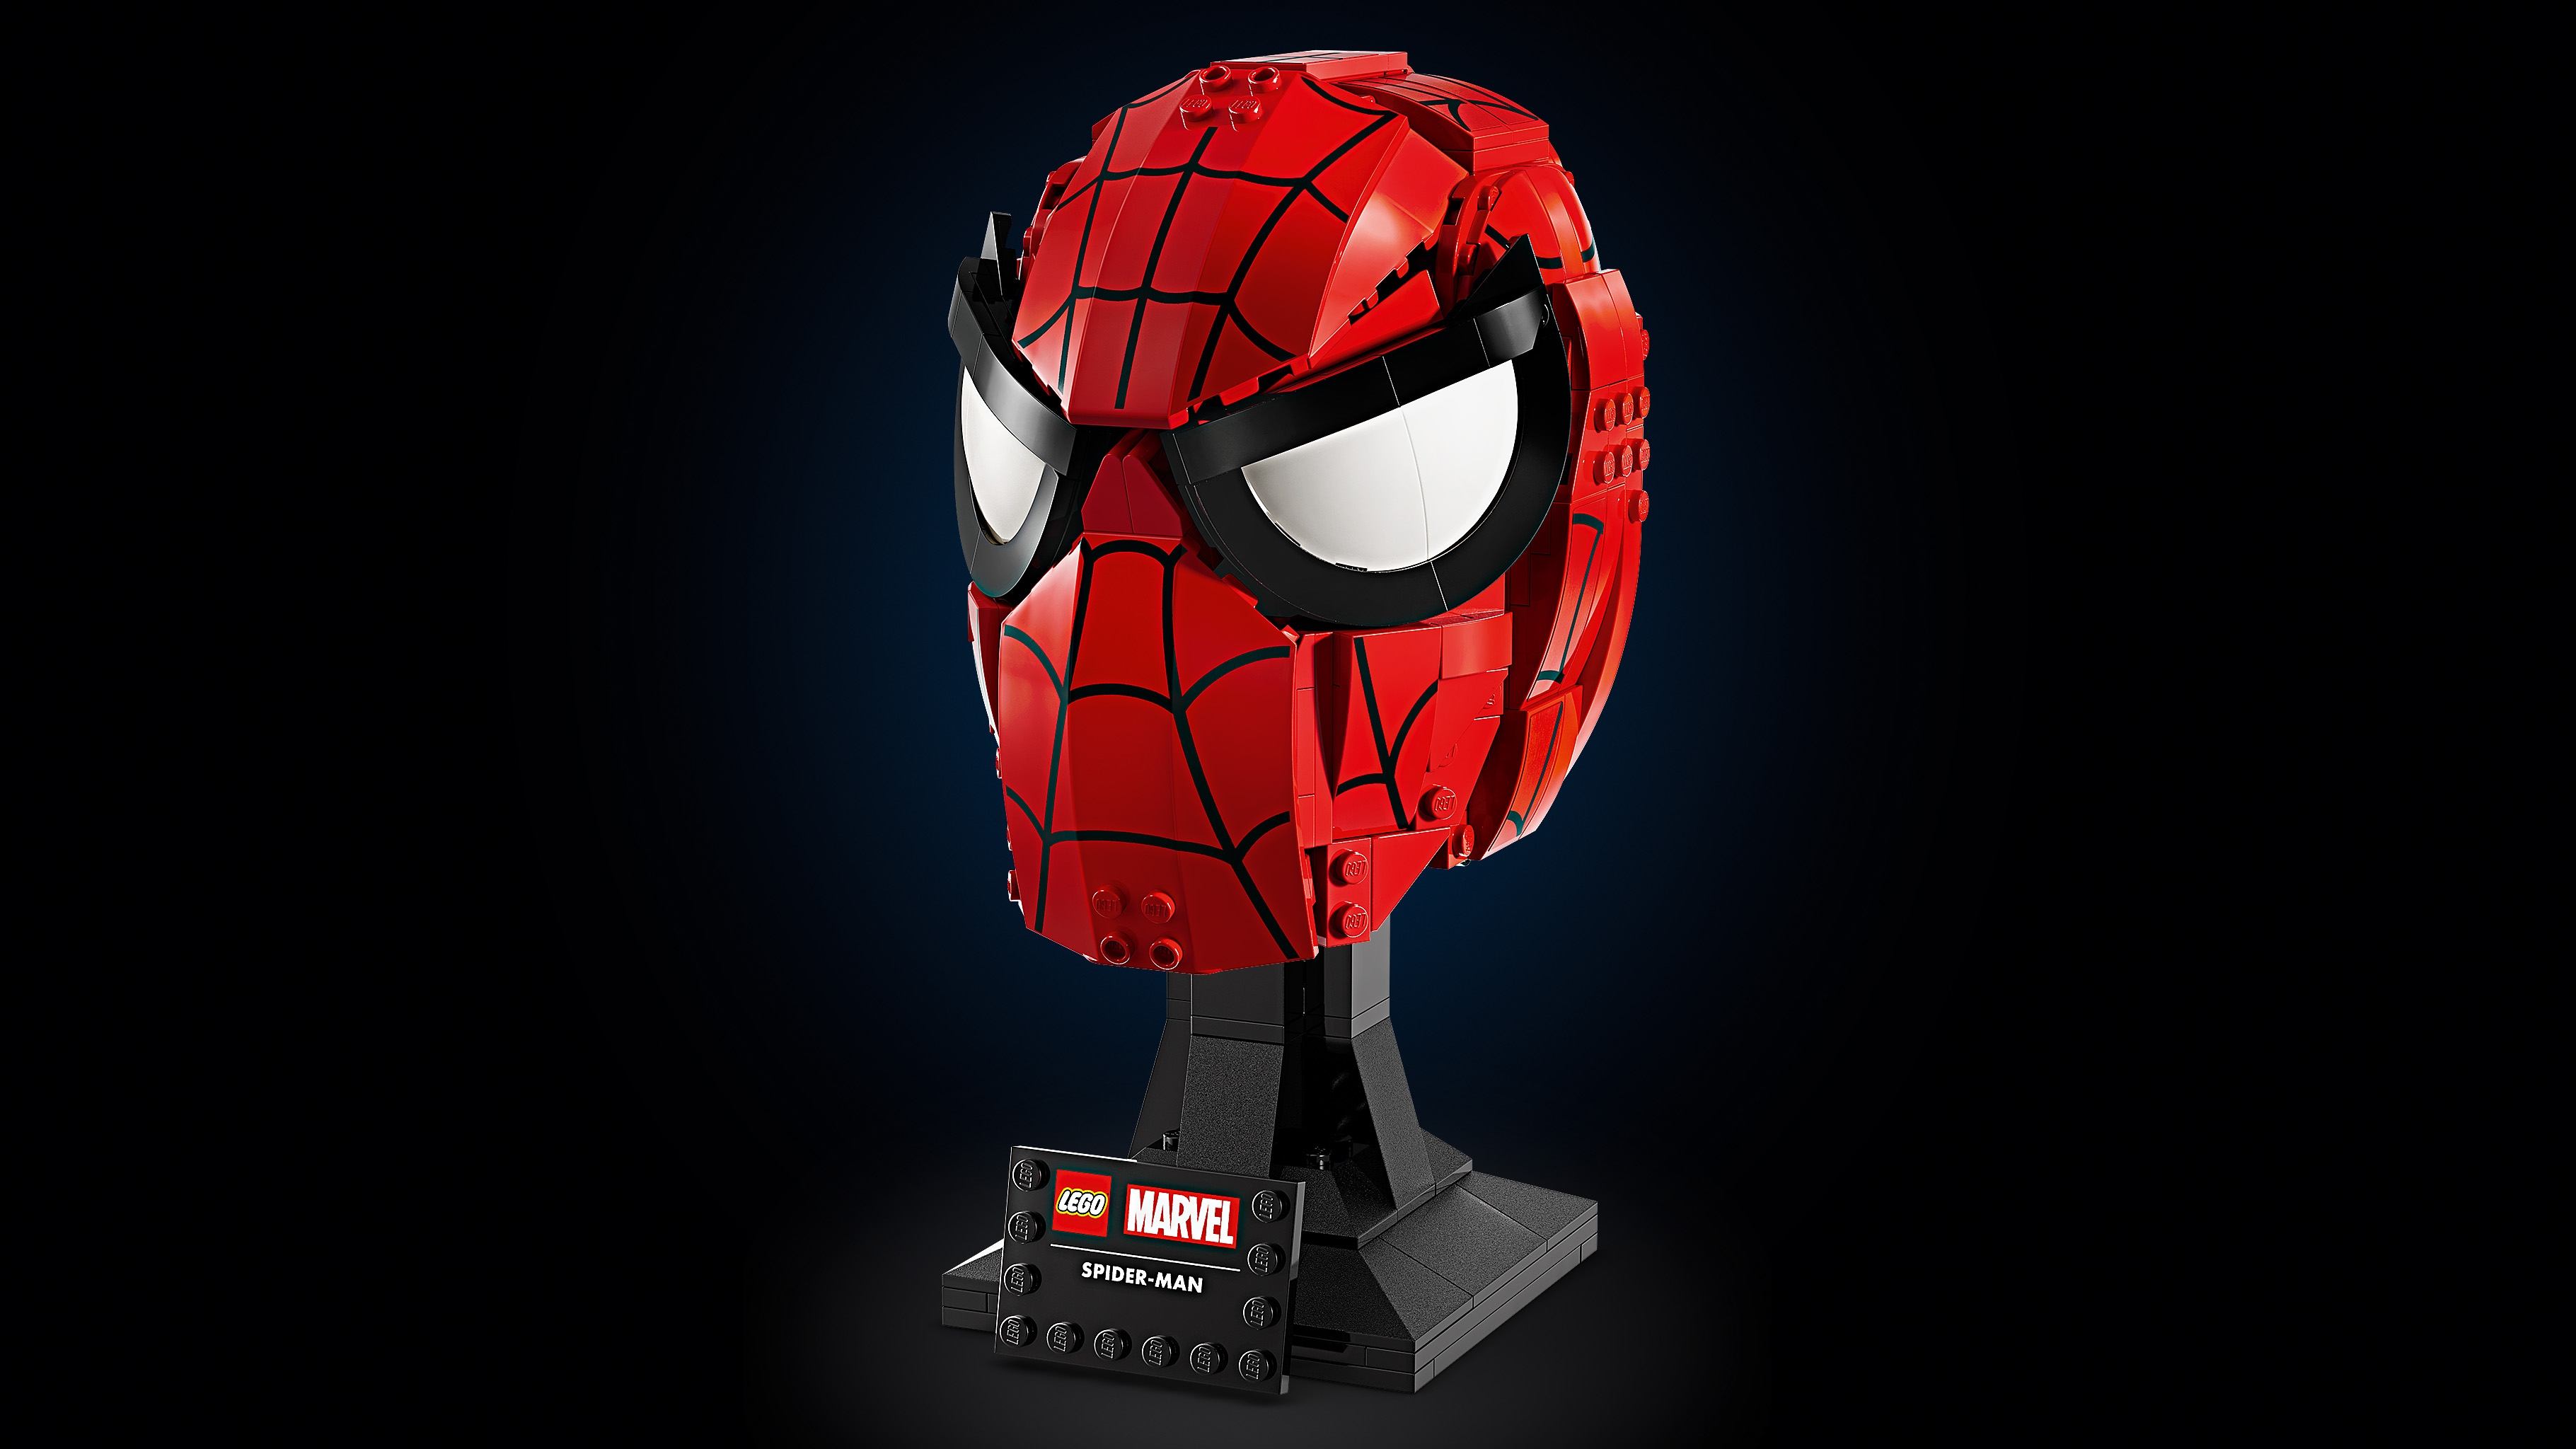 Spider-Man's Mask - Videos - LEGO.com for kids